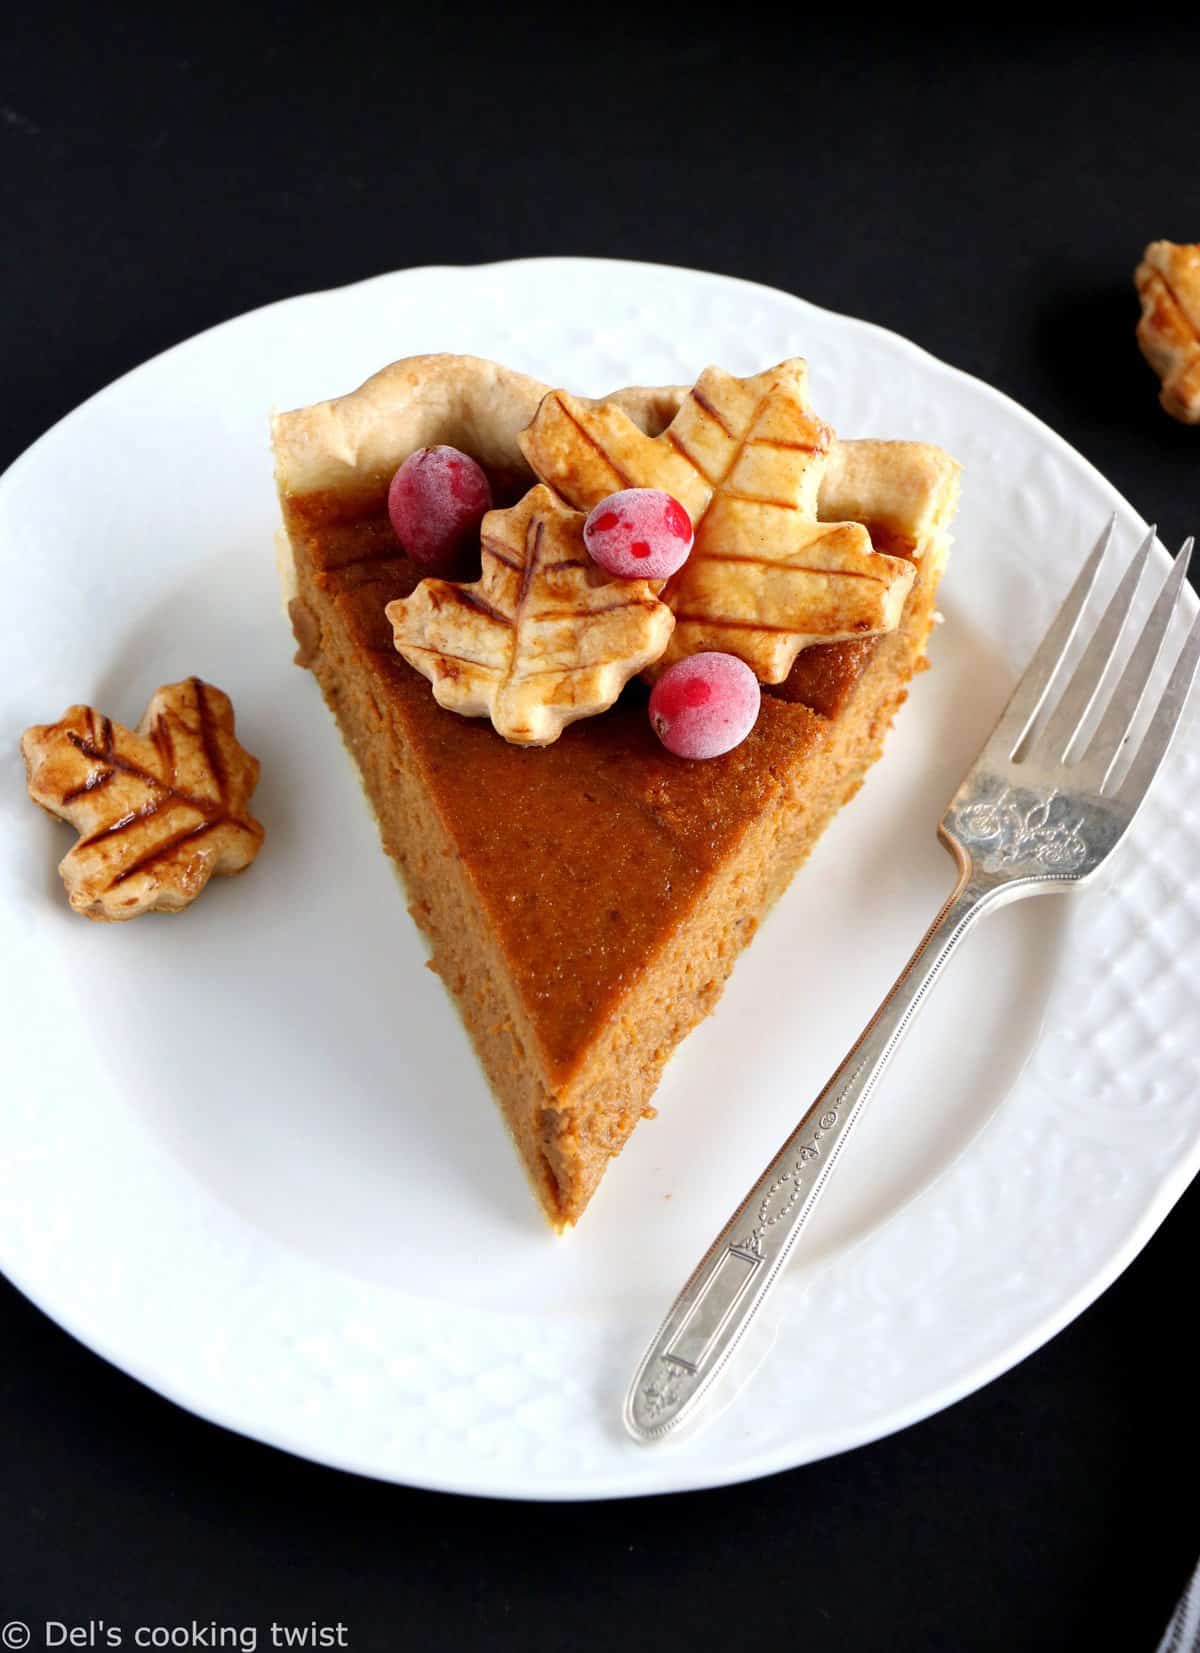 Dessert classique de Thanksgiving, la vraie pumpkin pie américaine est onctueuse, crémeuse et délicieusement parfumée aux épices chaudes d’automne. Découvrez ma recette authentique, réalisée avec des ingrédients naturels et entiers.